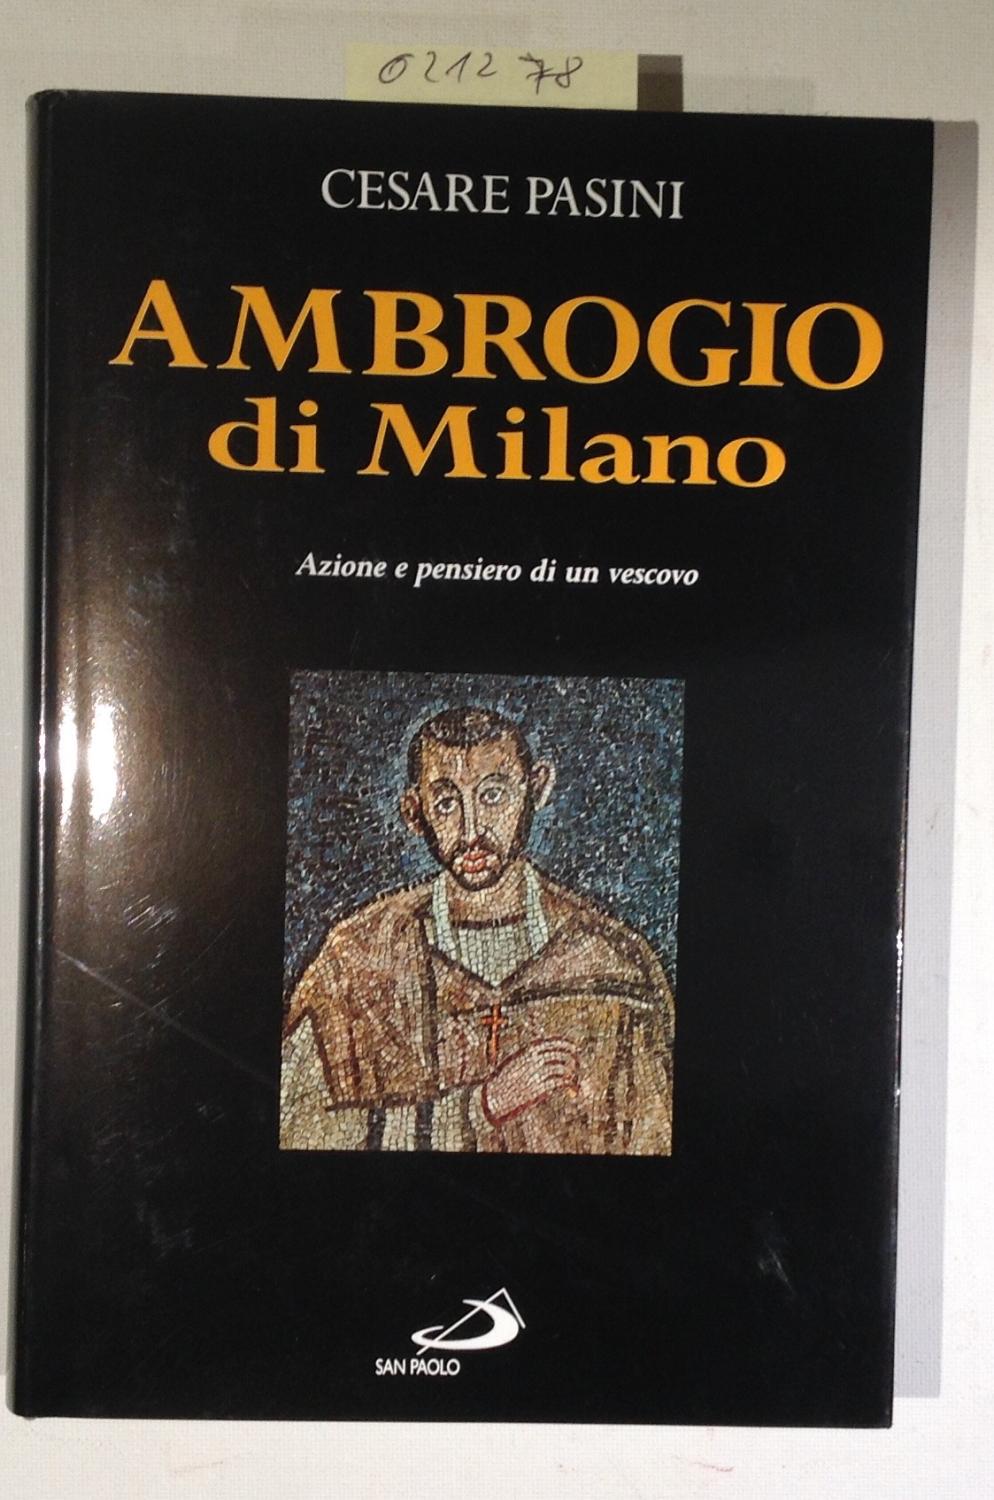 Ambrogio di Milano: Azione e pensiero di un vescovo ([Grandi biografie]) (Italian Edition) - Pasini, Cesare